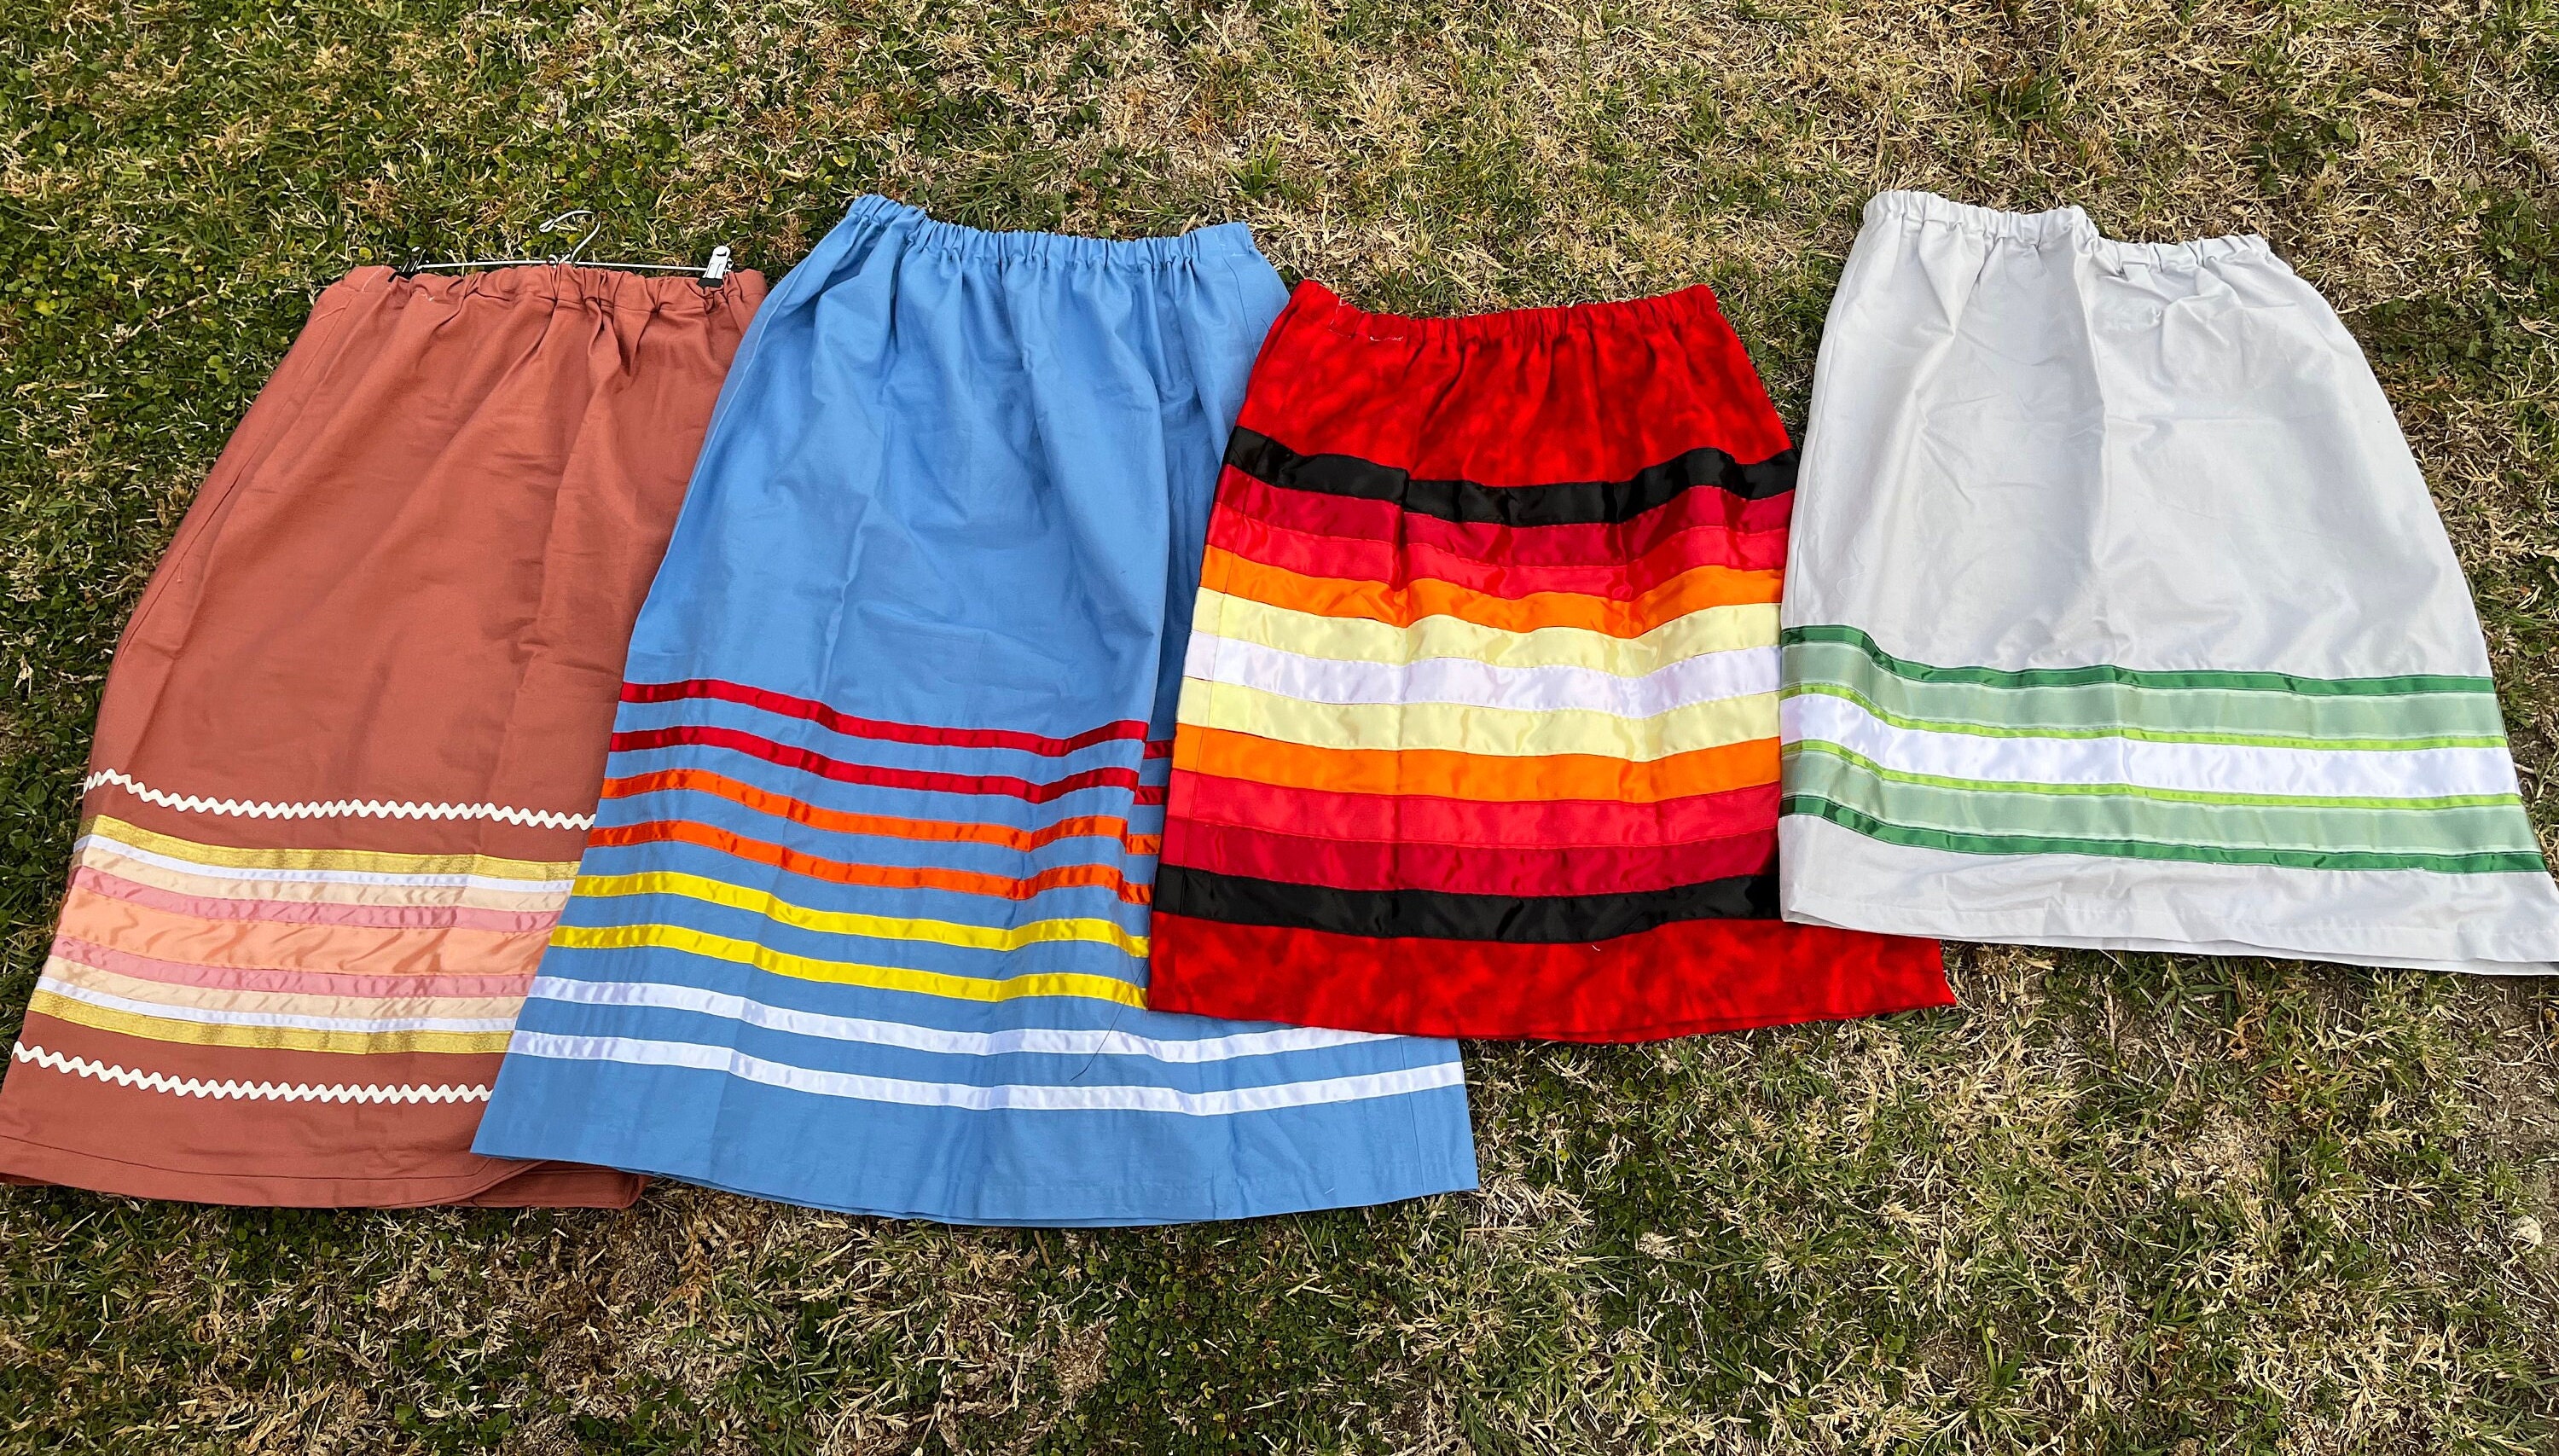 Strawberry Ribbon Skirt  Ribbon skirts, Applique skirt, Skirt